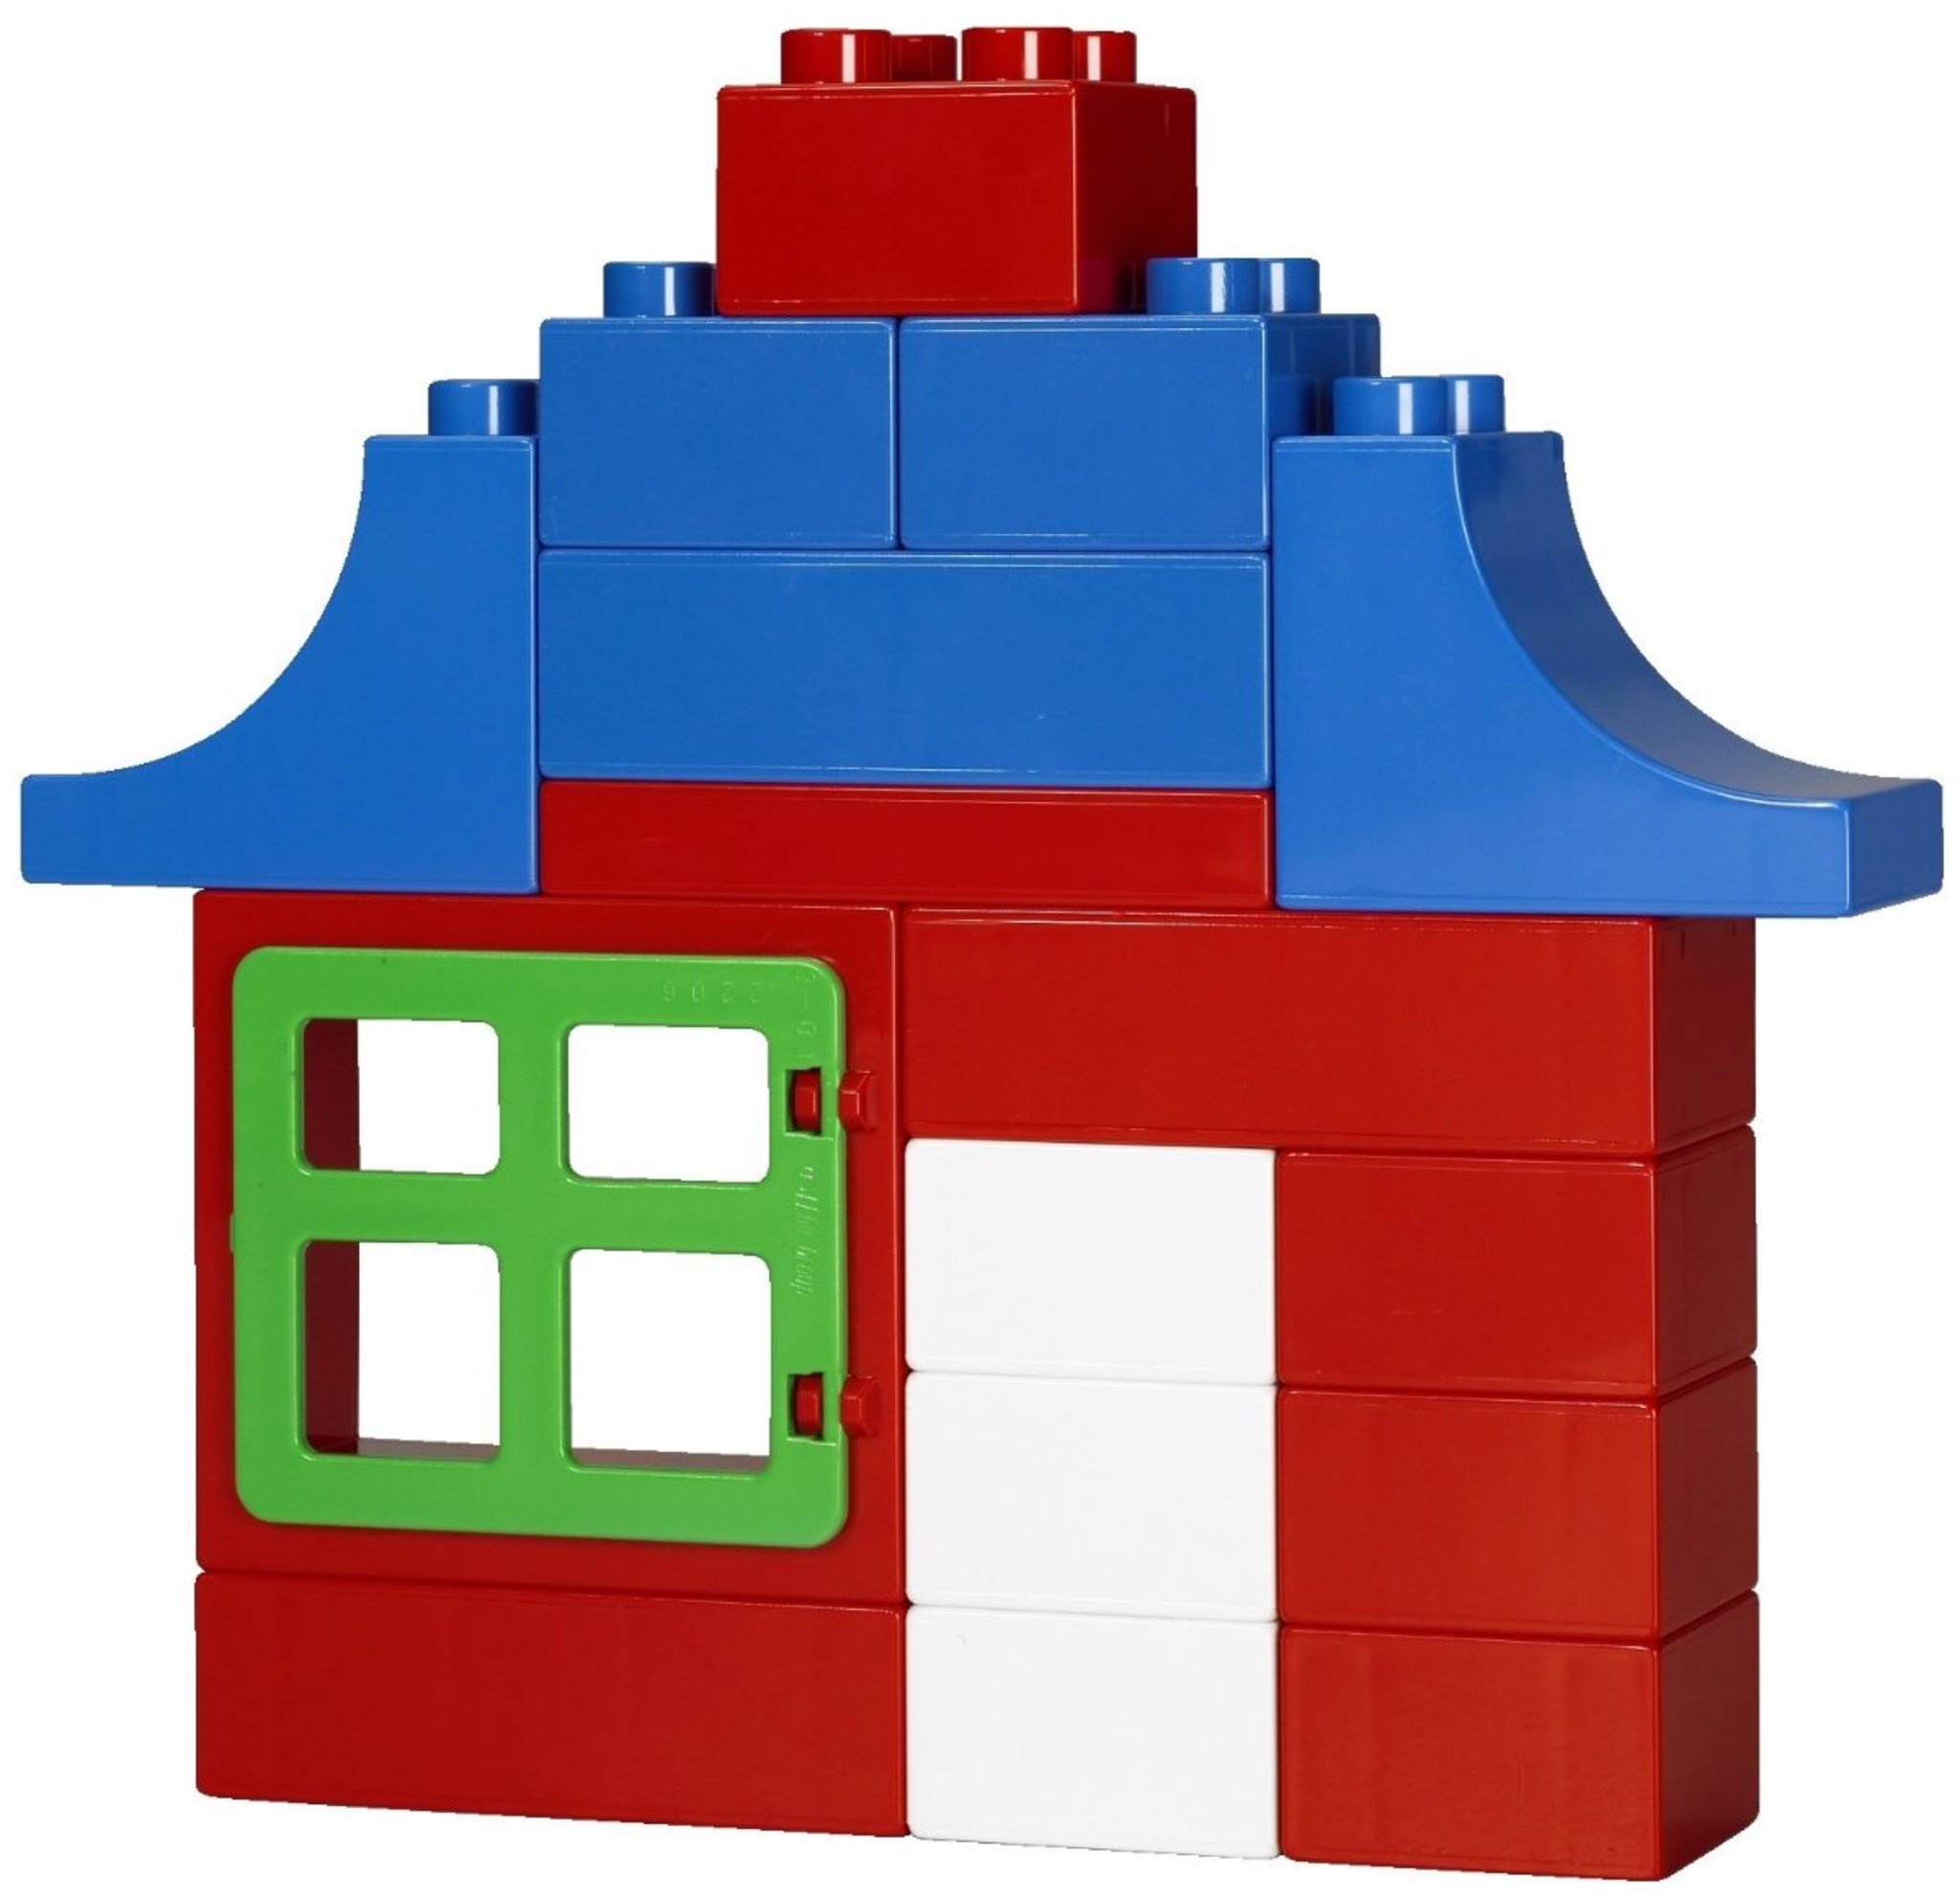 LEGO Duplo 5488 - Duplo Farm Building Set | Mattonito